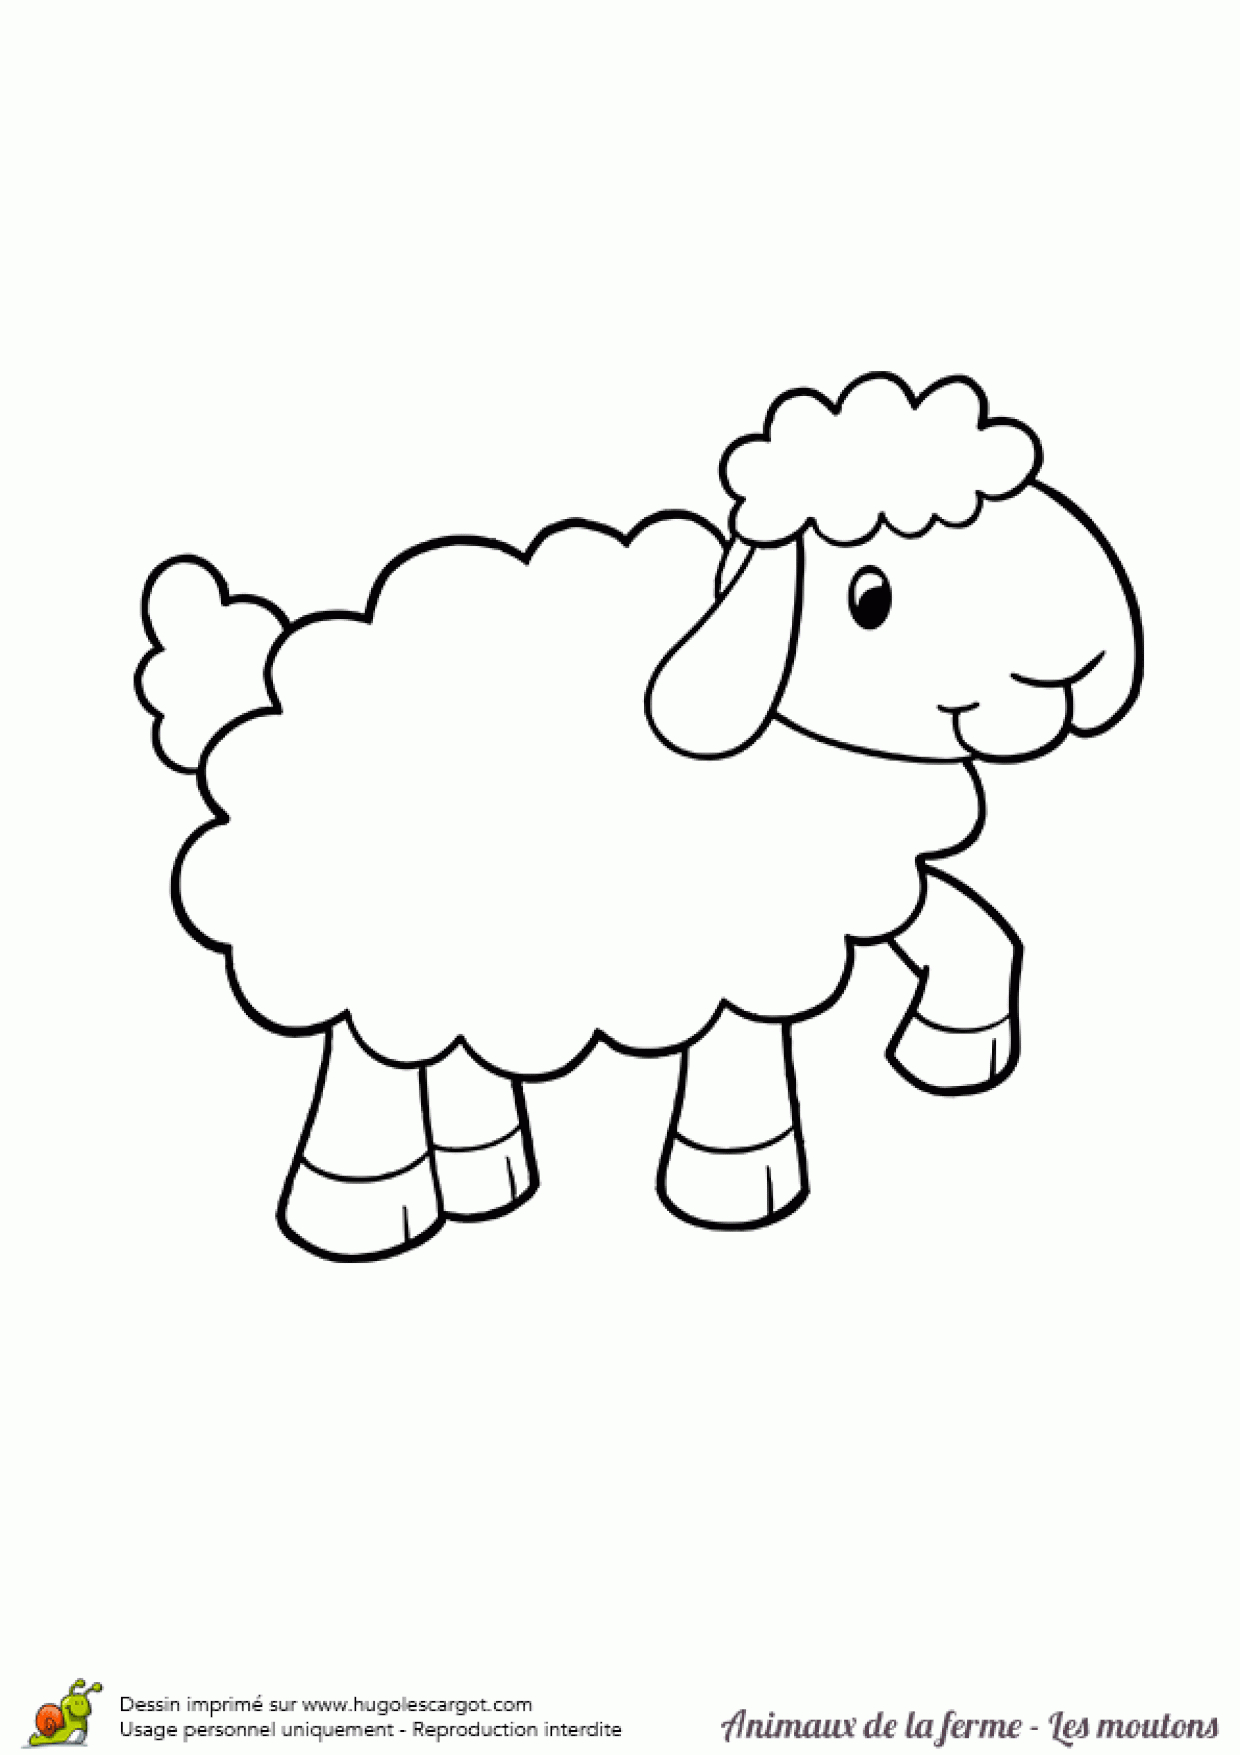 Coloriage Animaux De La Ferme Joli Mouton Sur Hugolescargot tout Dessin Animaux De La Ferme À Imprimer